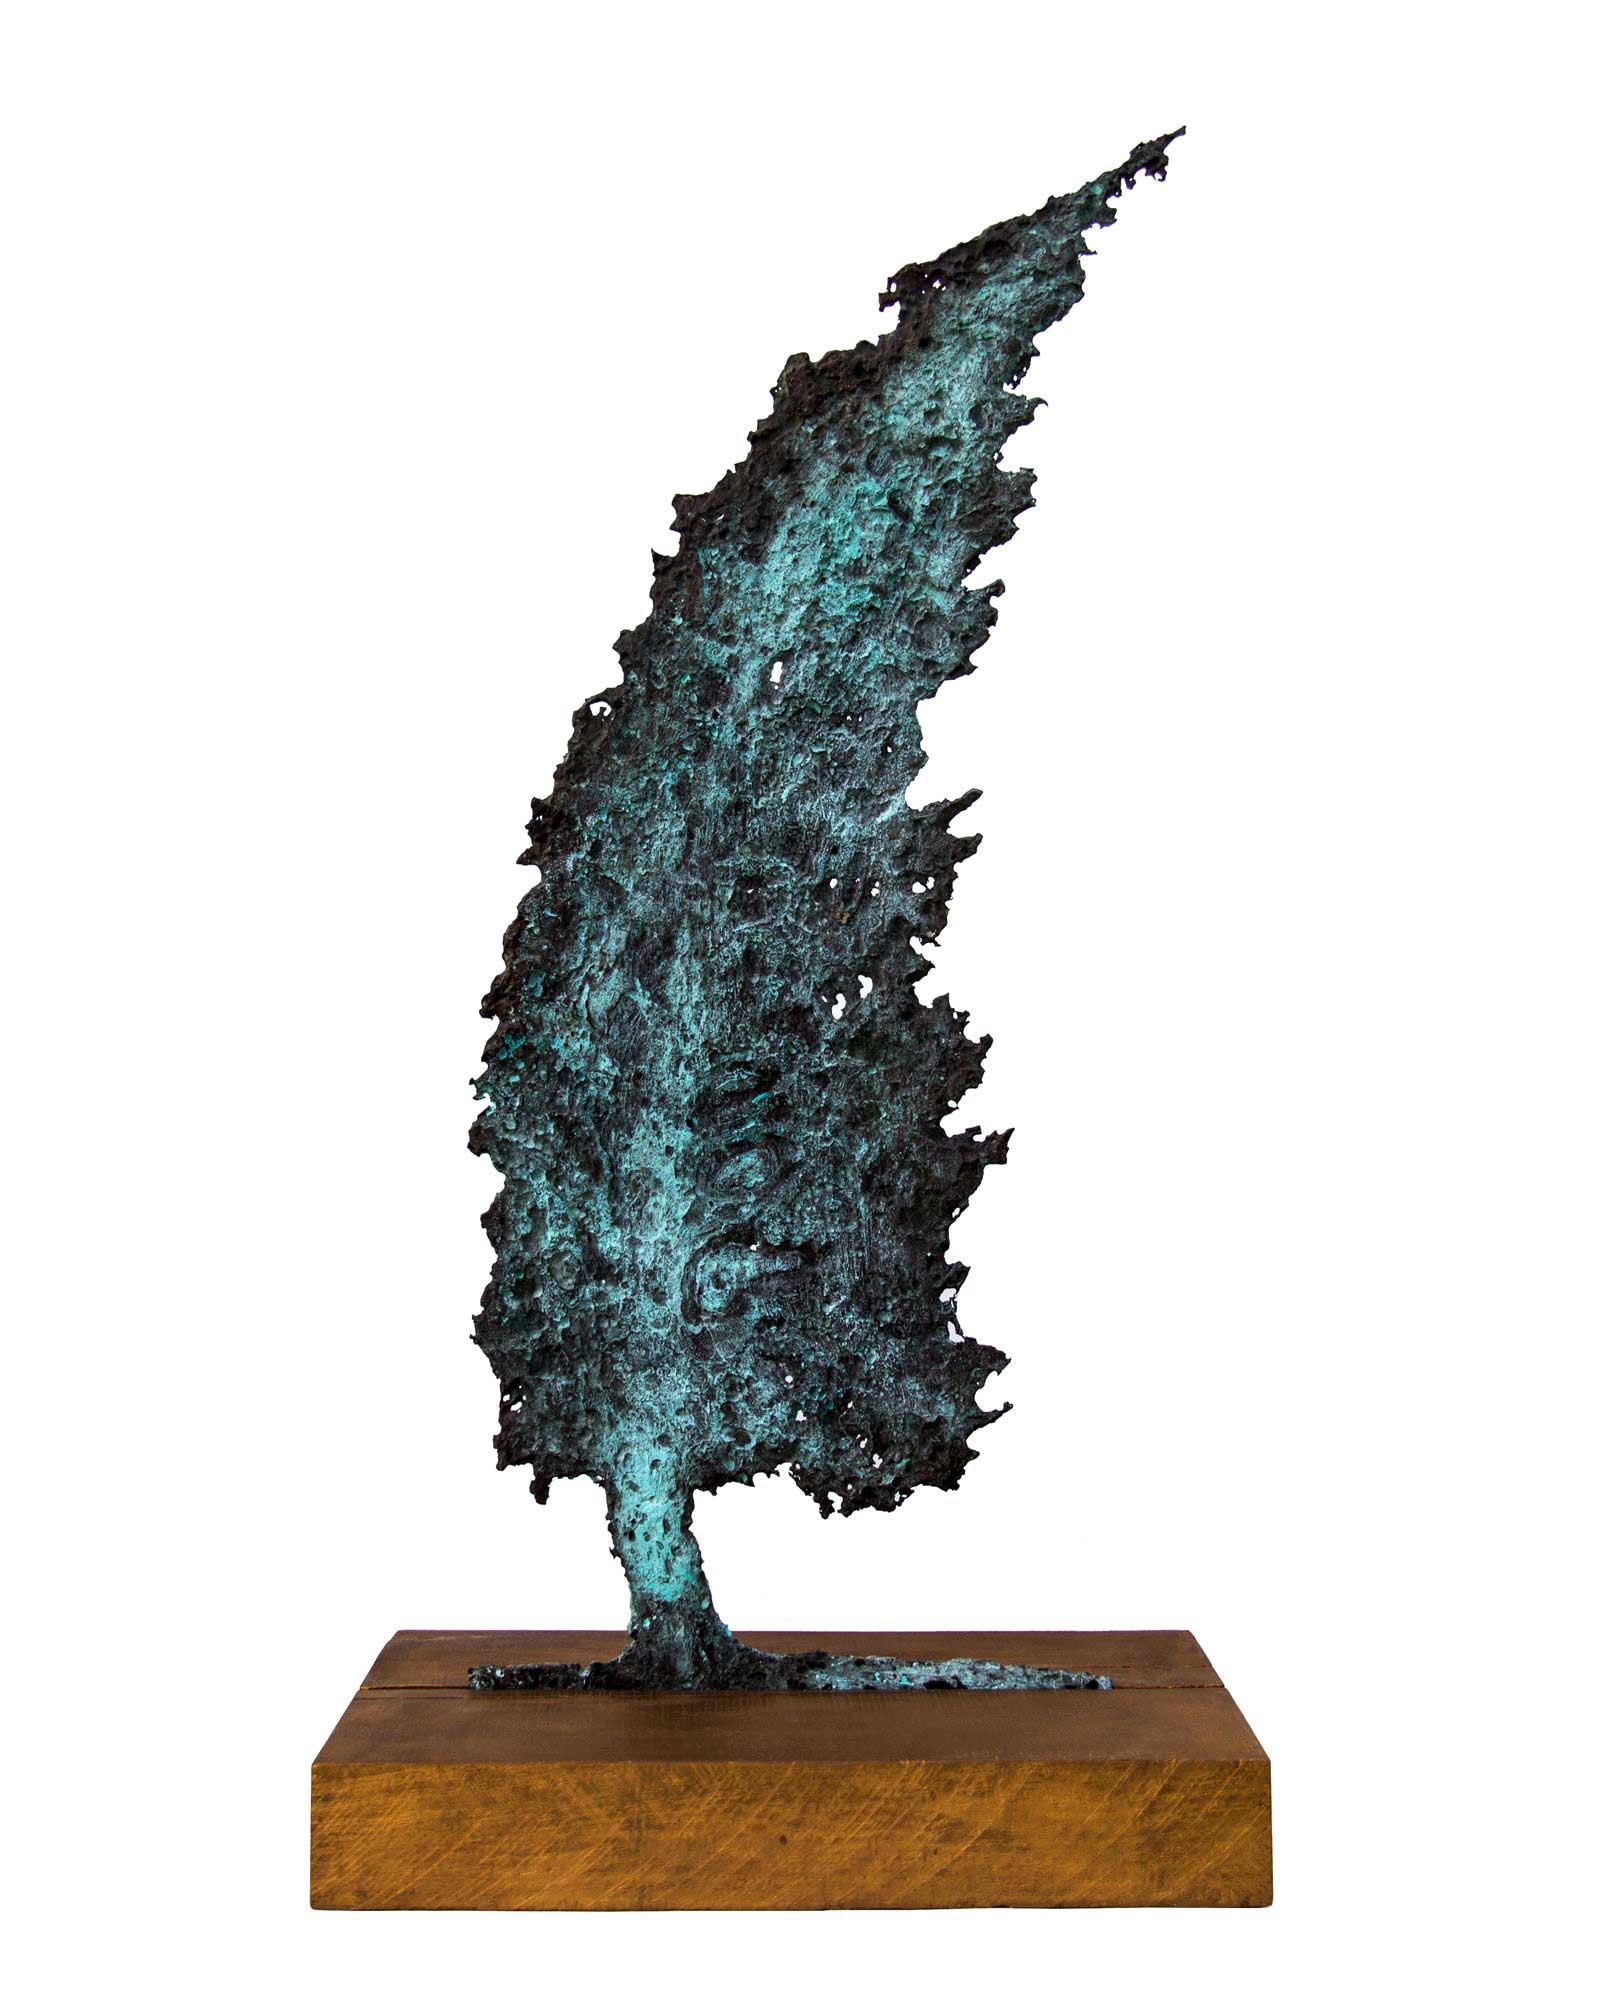 Buy sculpture online Singapore Wind Vitaly Didenko Turkmenistan Exquisite Art